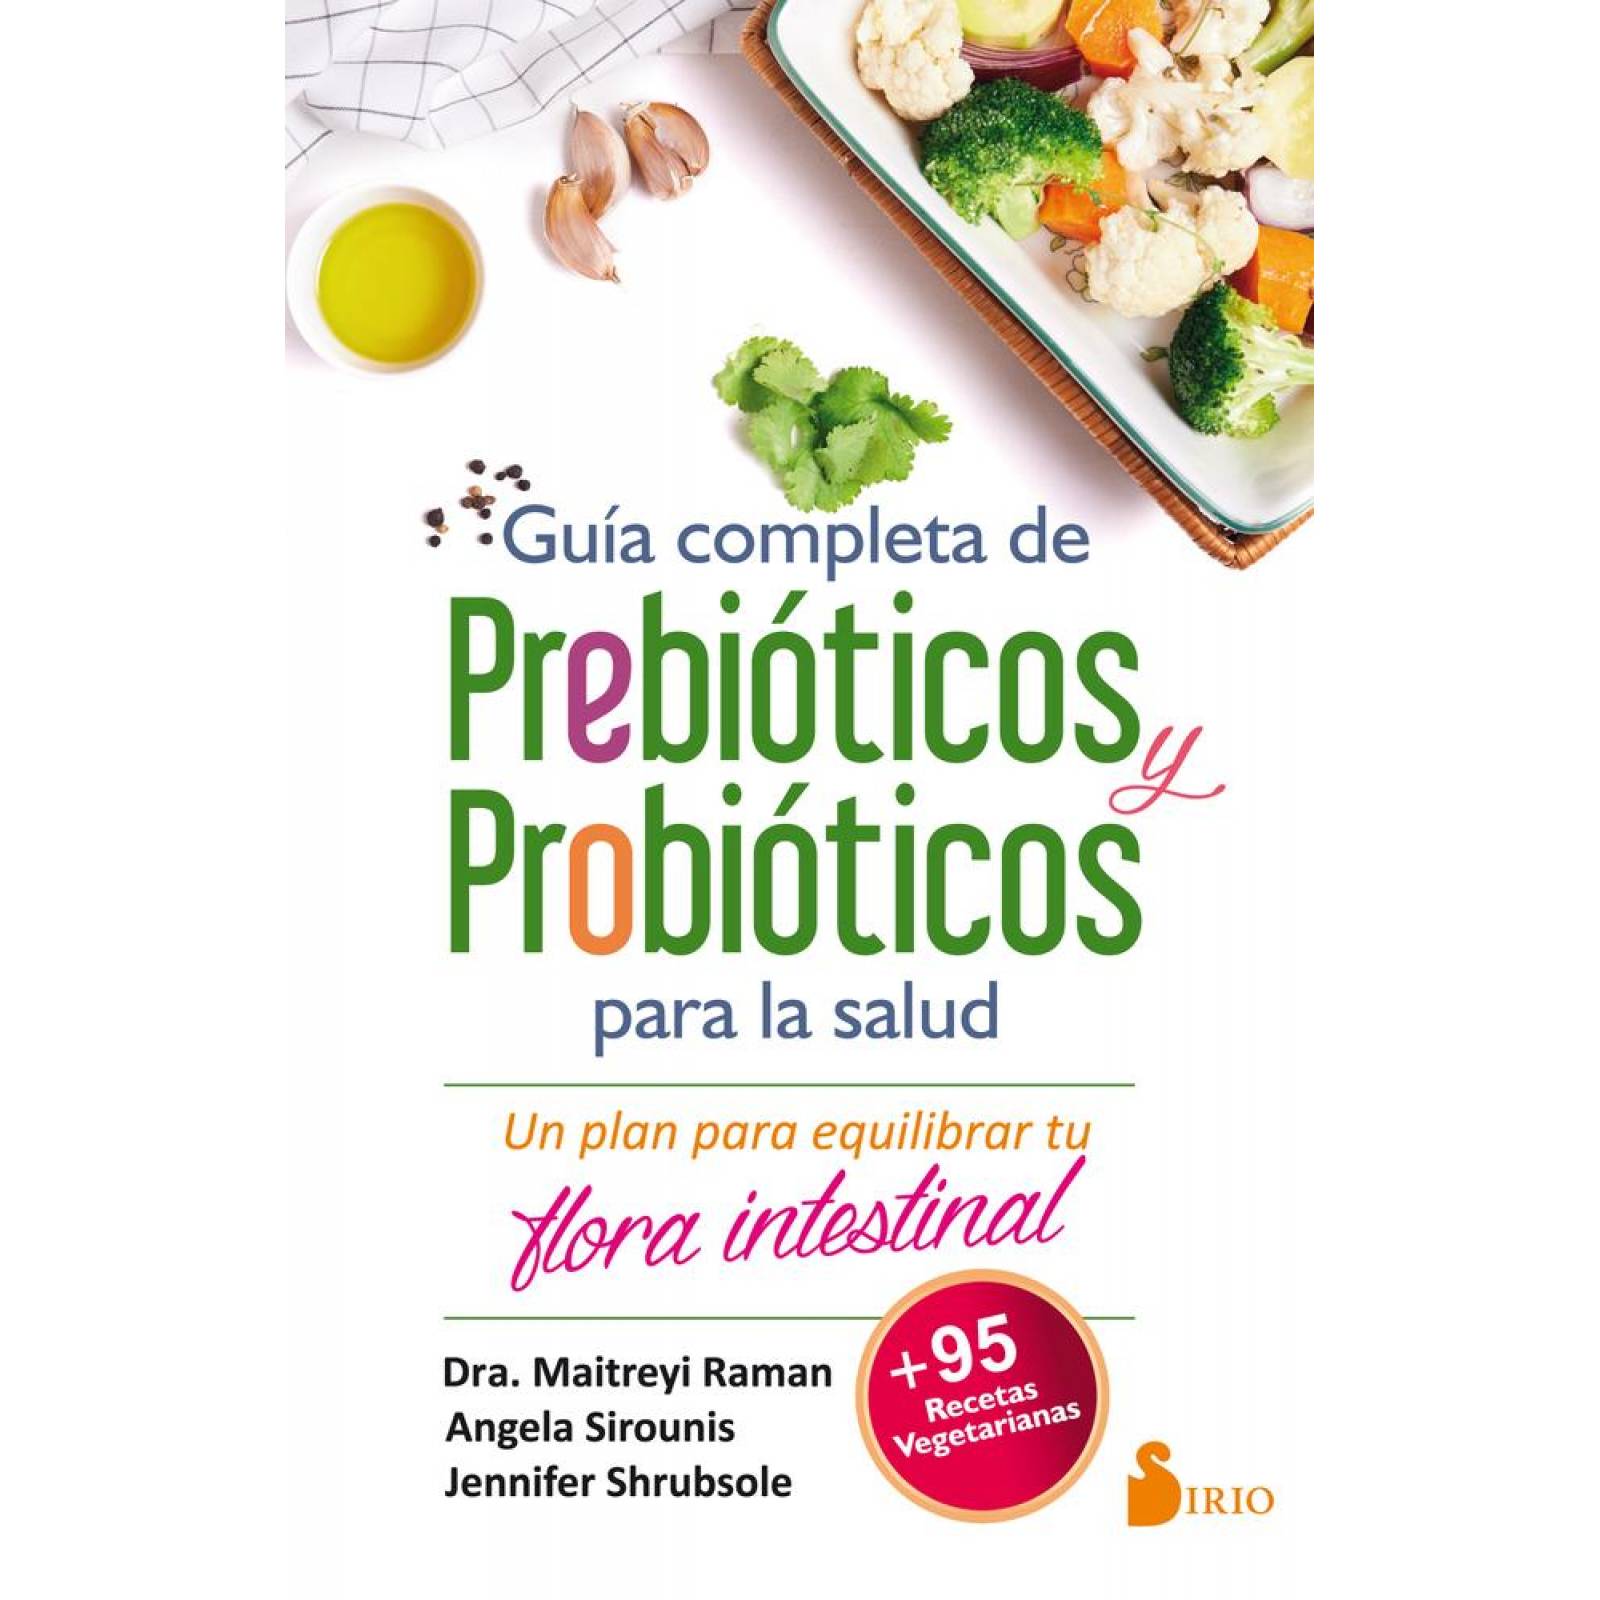 Guía completa de prebióticos y prebióticos 